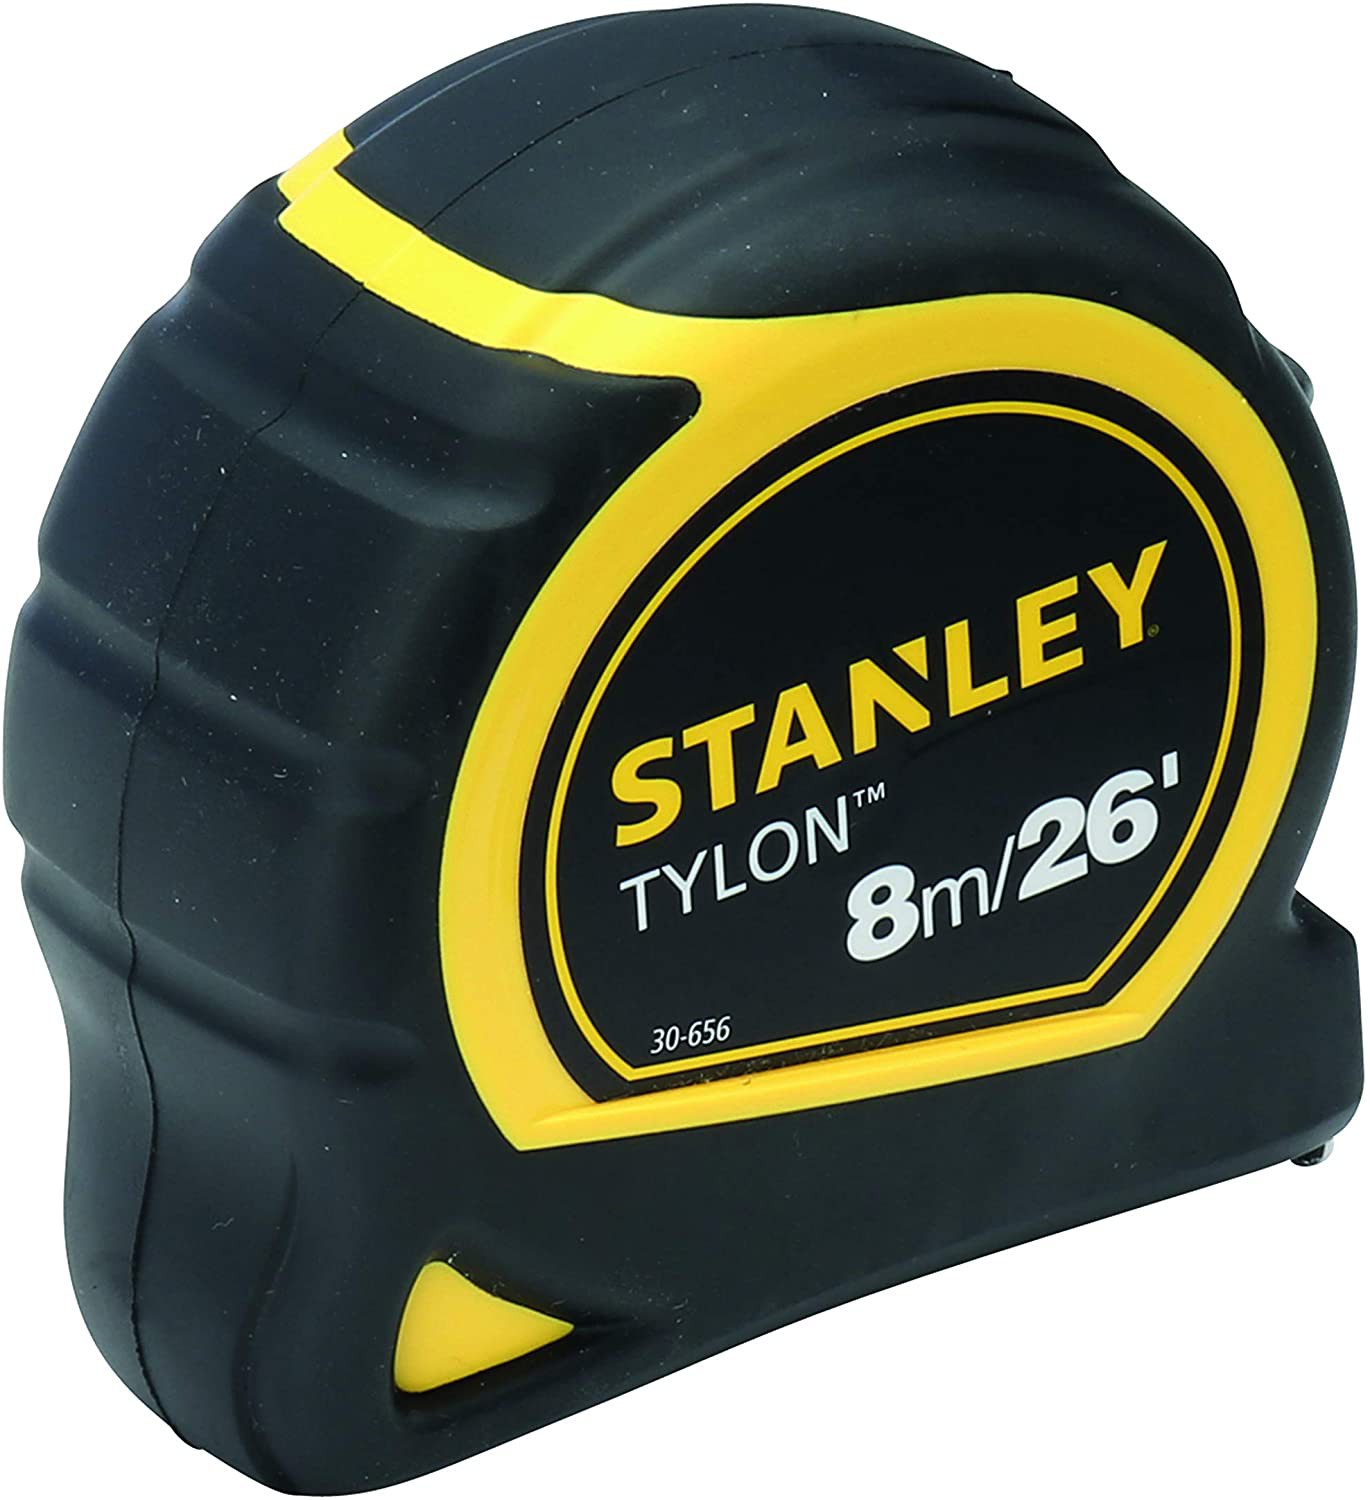 Thước cuộn, thước kéo Stanley Tylon 8M - STHT30656-8